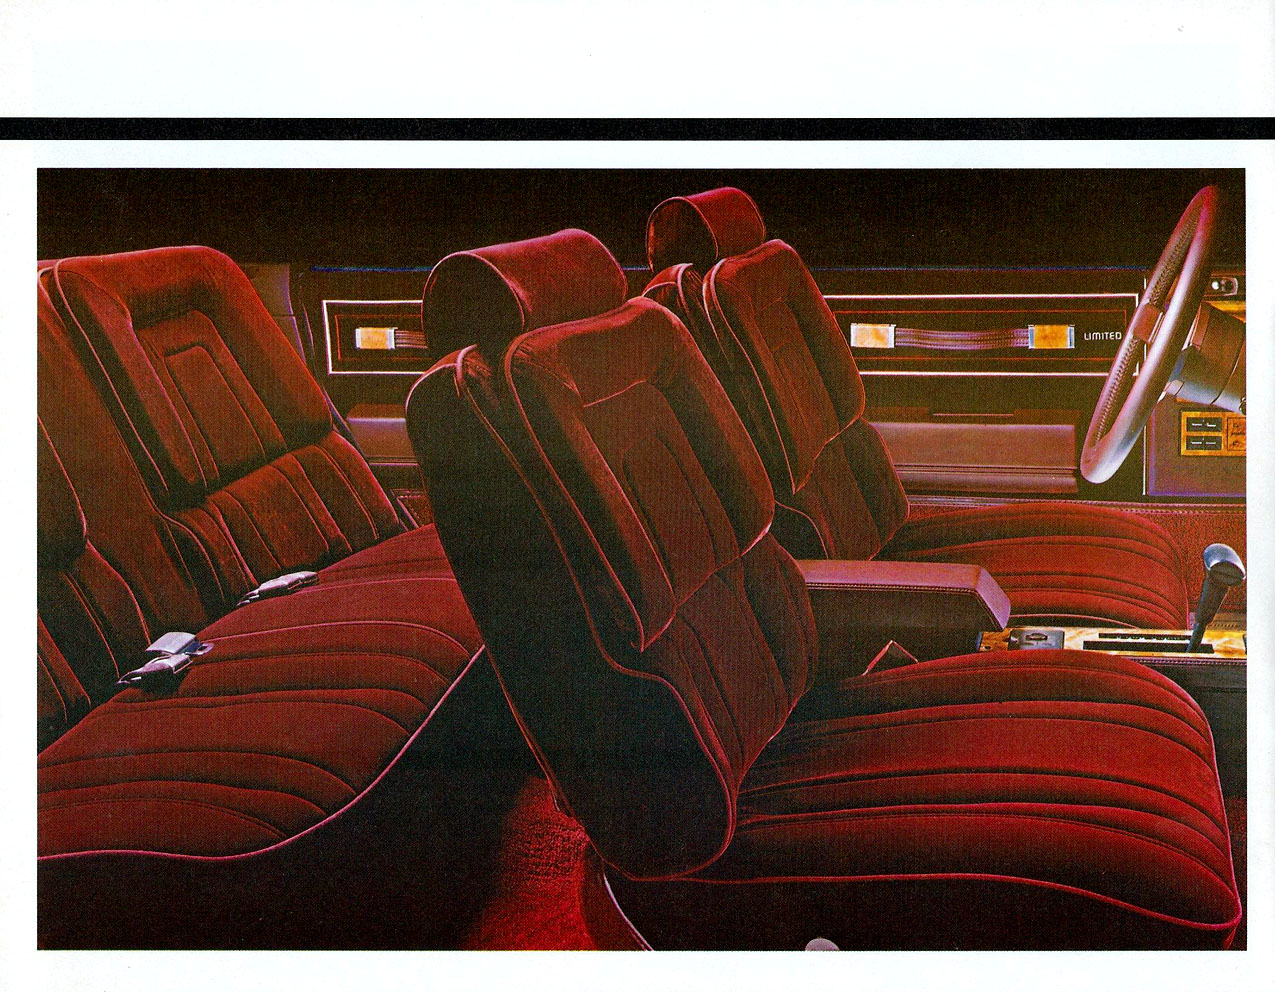 1986_Buick_Century_Cdn-04